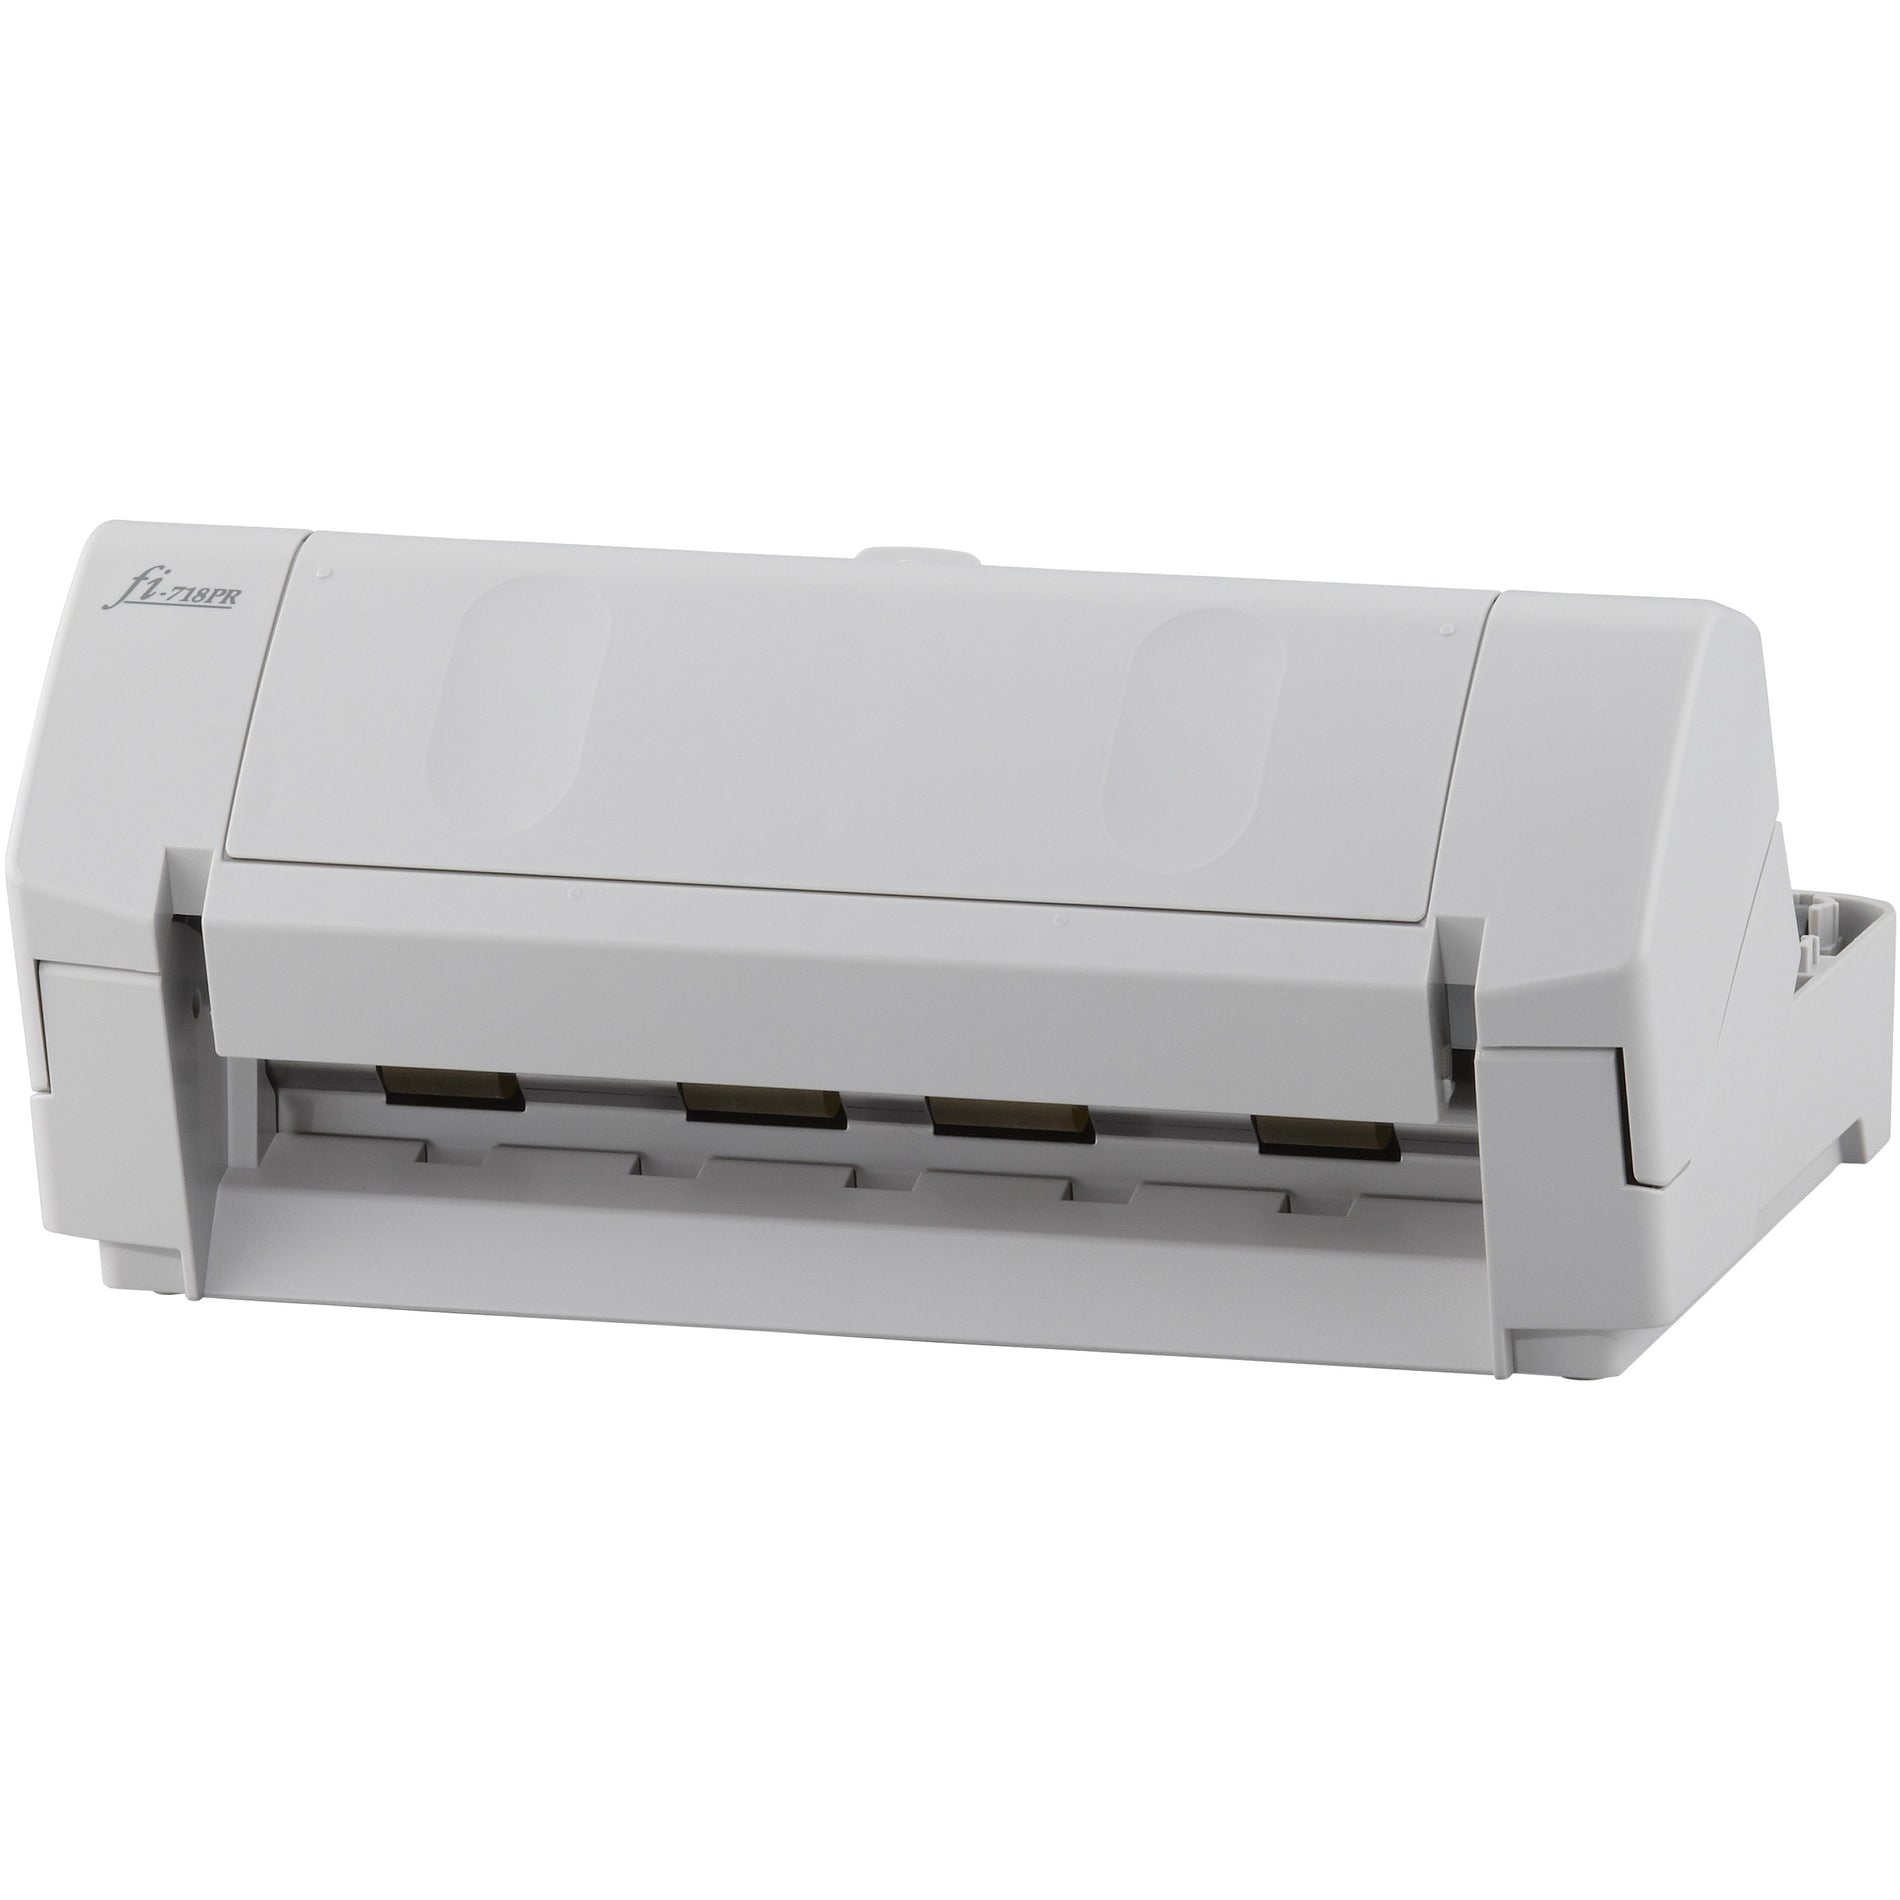 Fujitsu PA03670-D201 Post-Scan Imprinter, Improve Scanned Documents Effortlessly